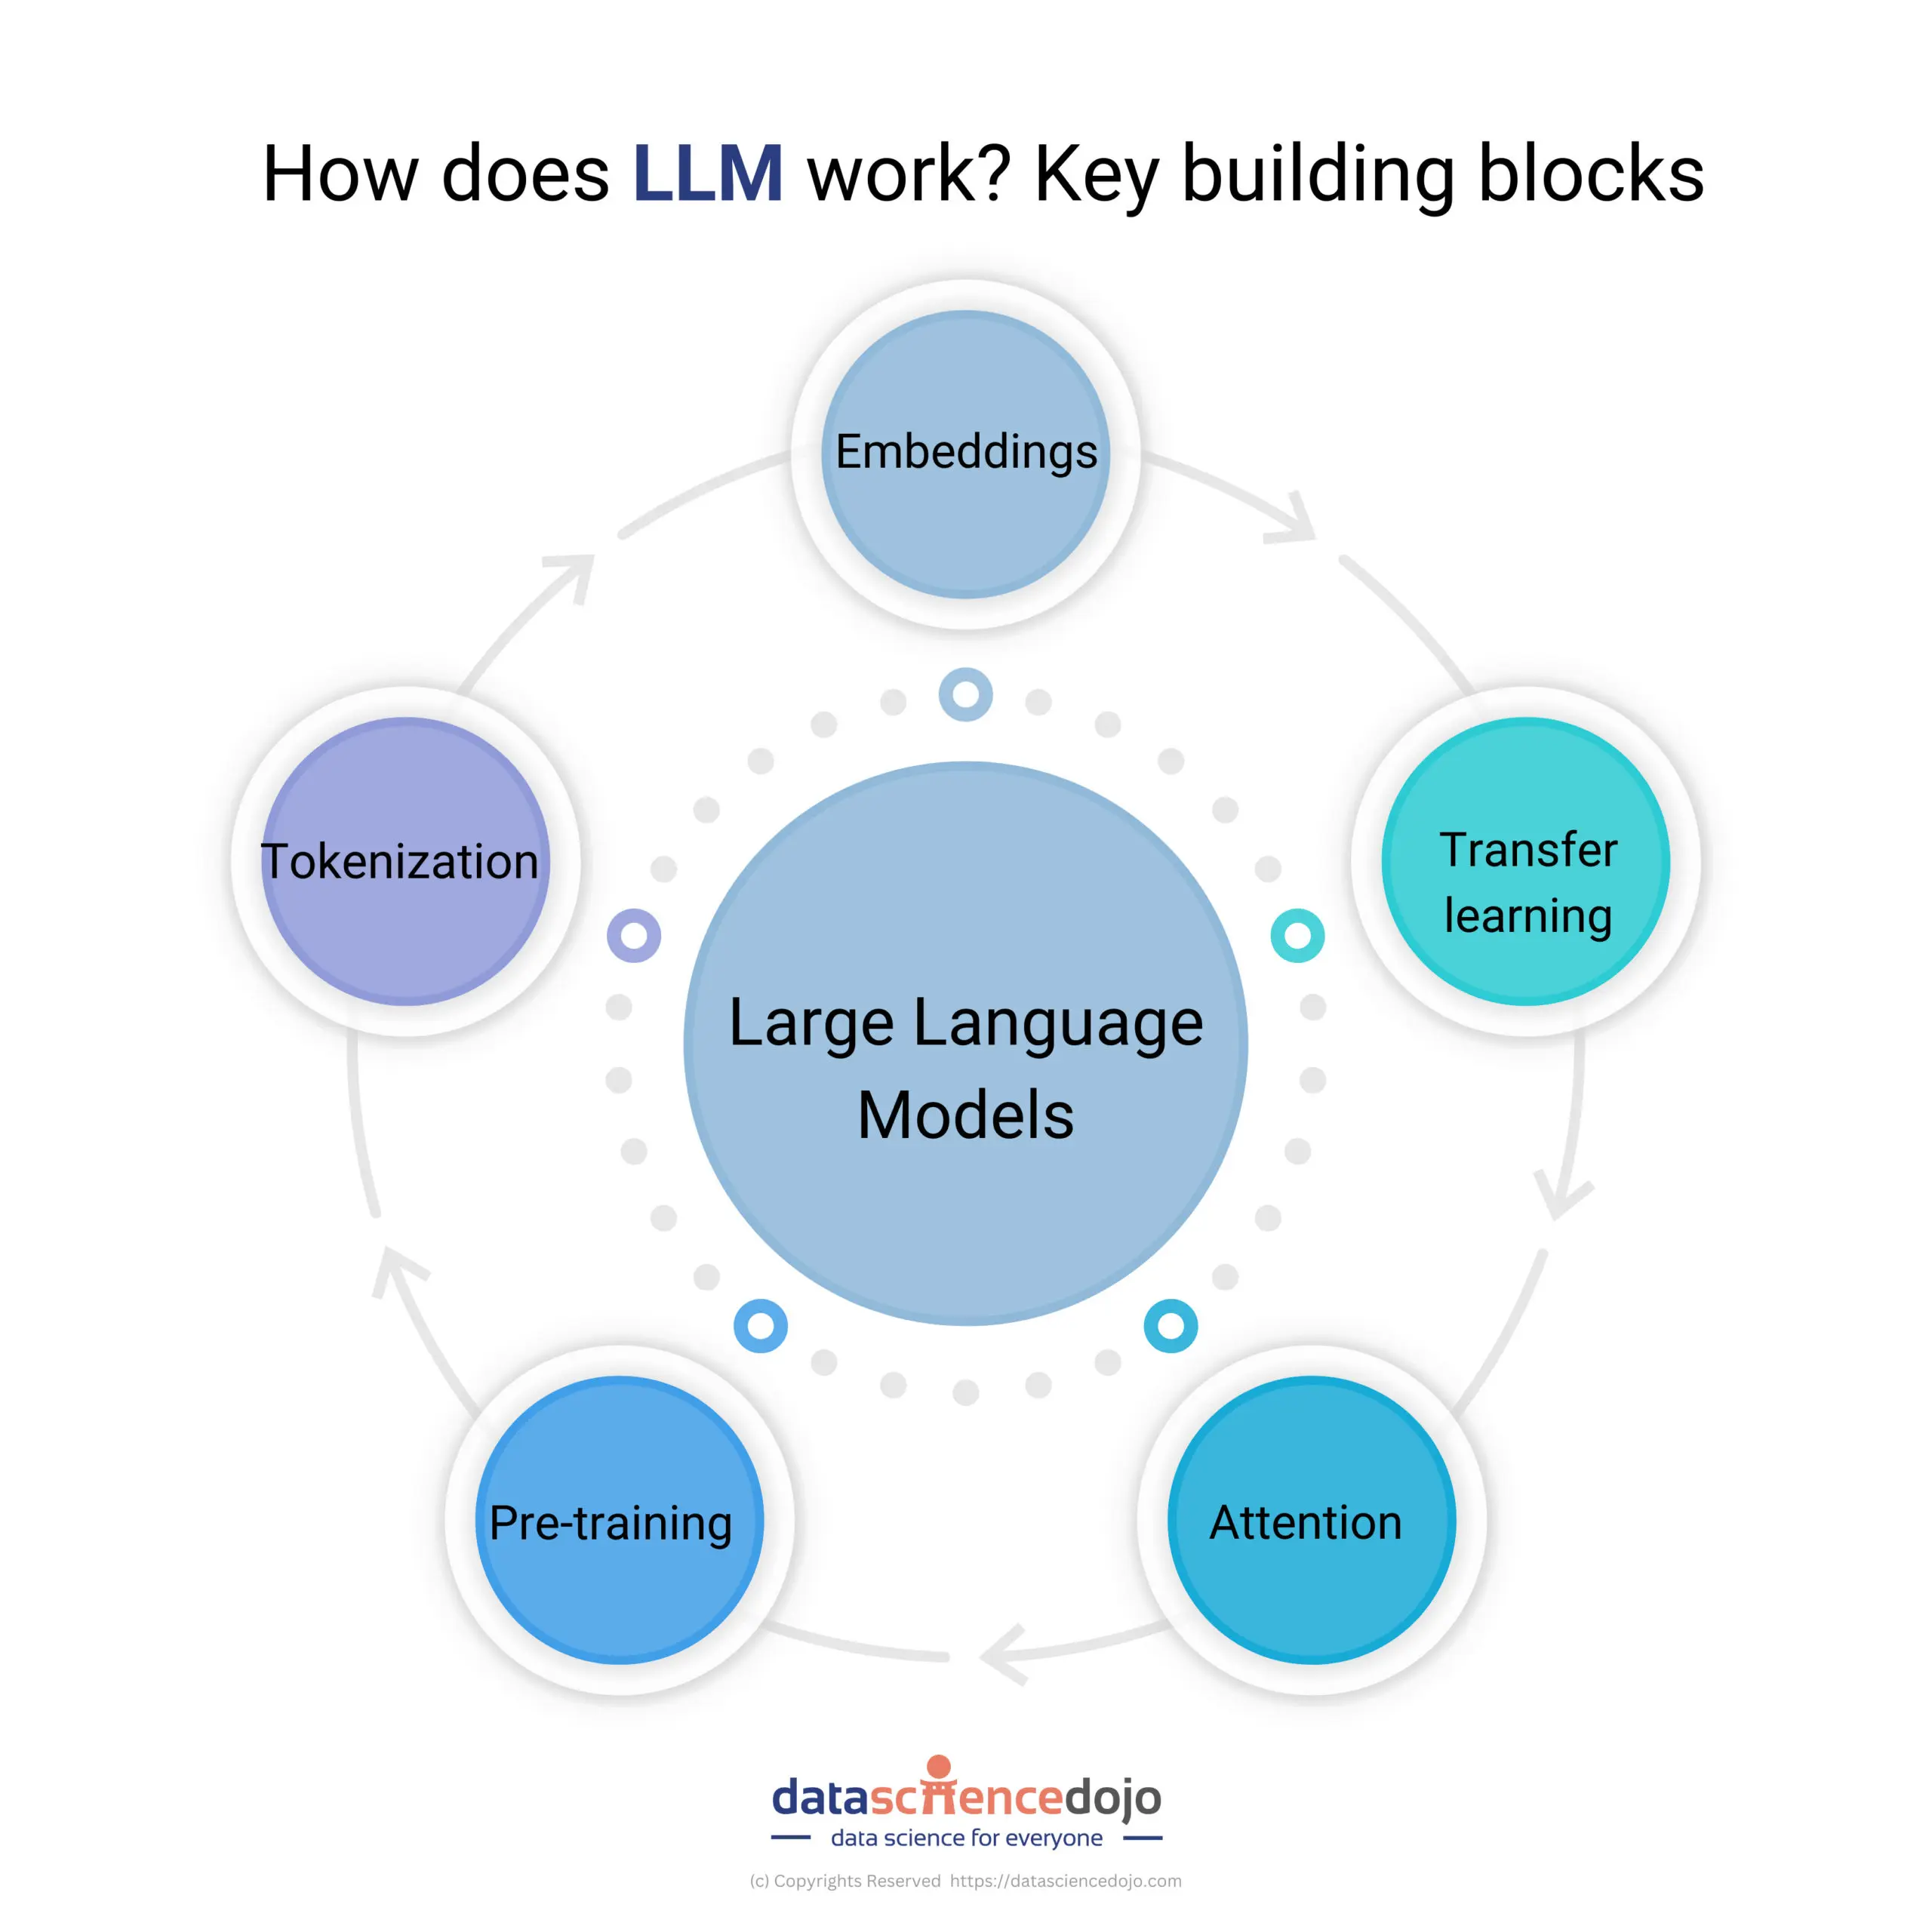 LLM key building blocks scaled | Data Science Dojo